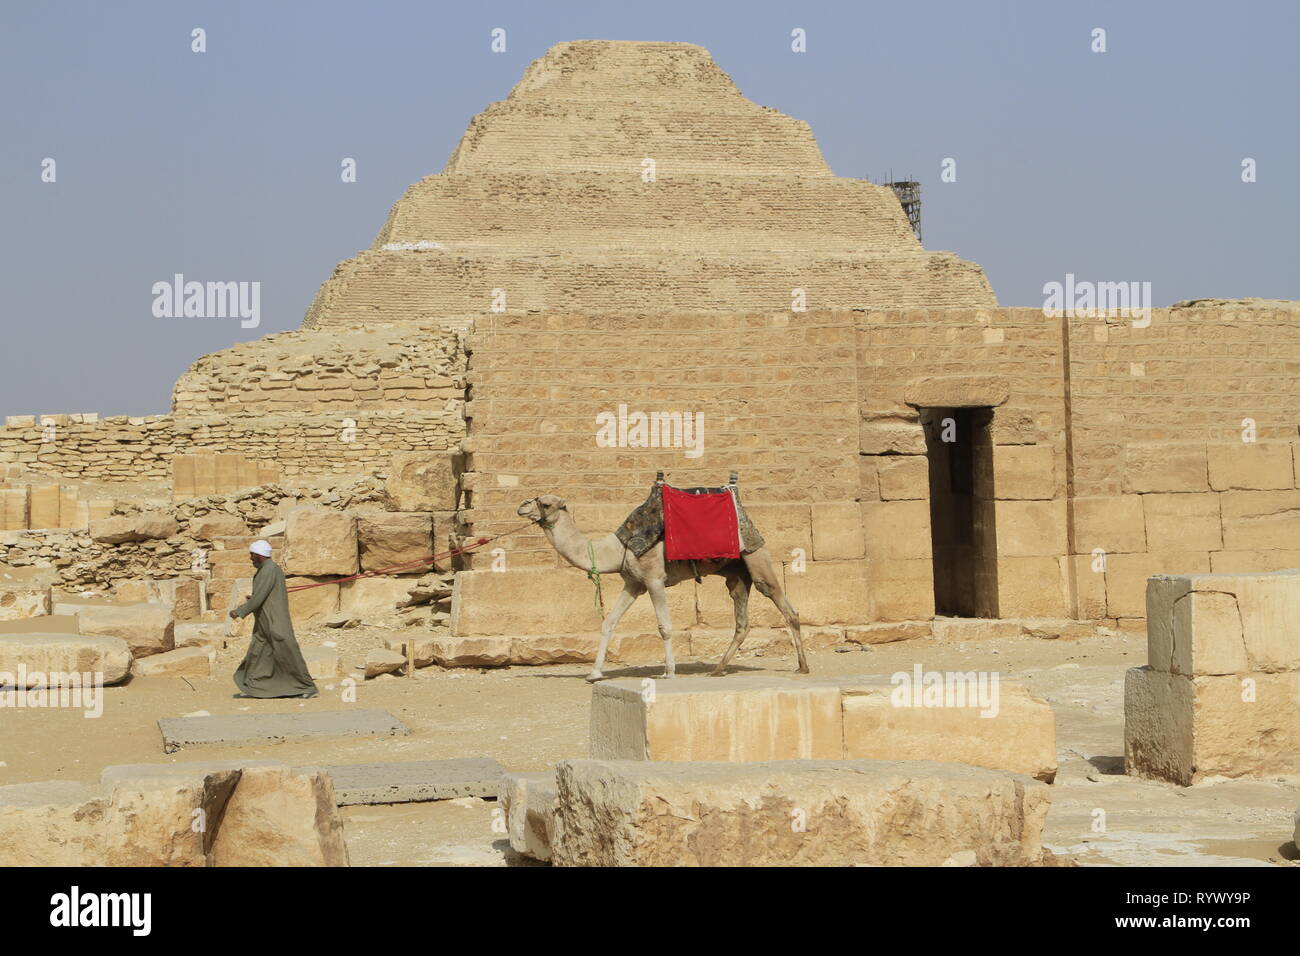 Mann Kamel mit einem roten Sattel Decke, trat Pyramide des Djoser, Saqqara, Gizeh Governorate, Ägypten Stockfoto